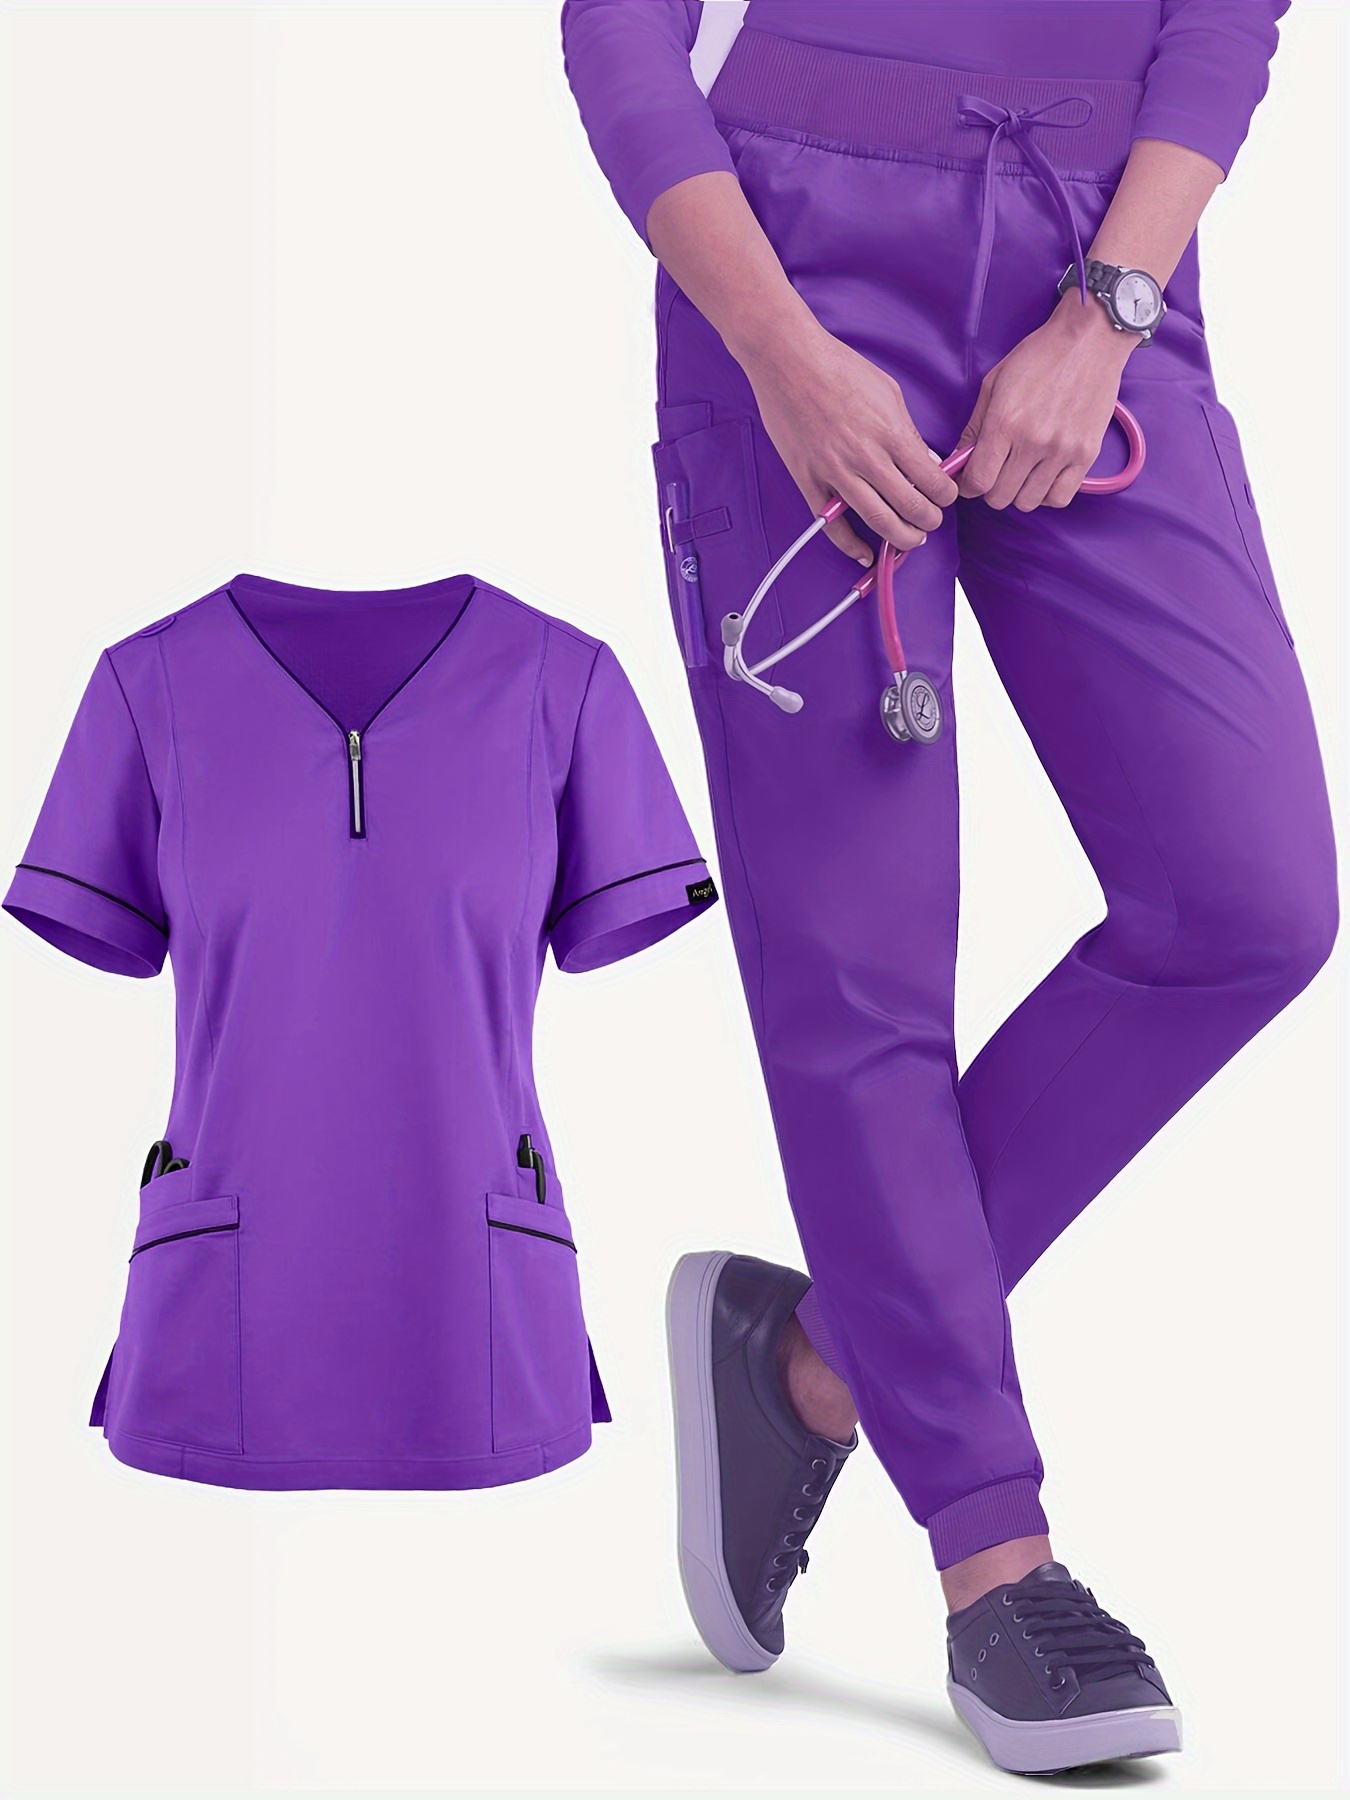 Medical Vest Tunic Scrub Uniform Nurse V-NECK White trim Hospital